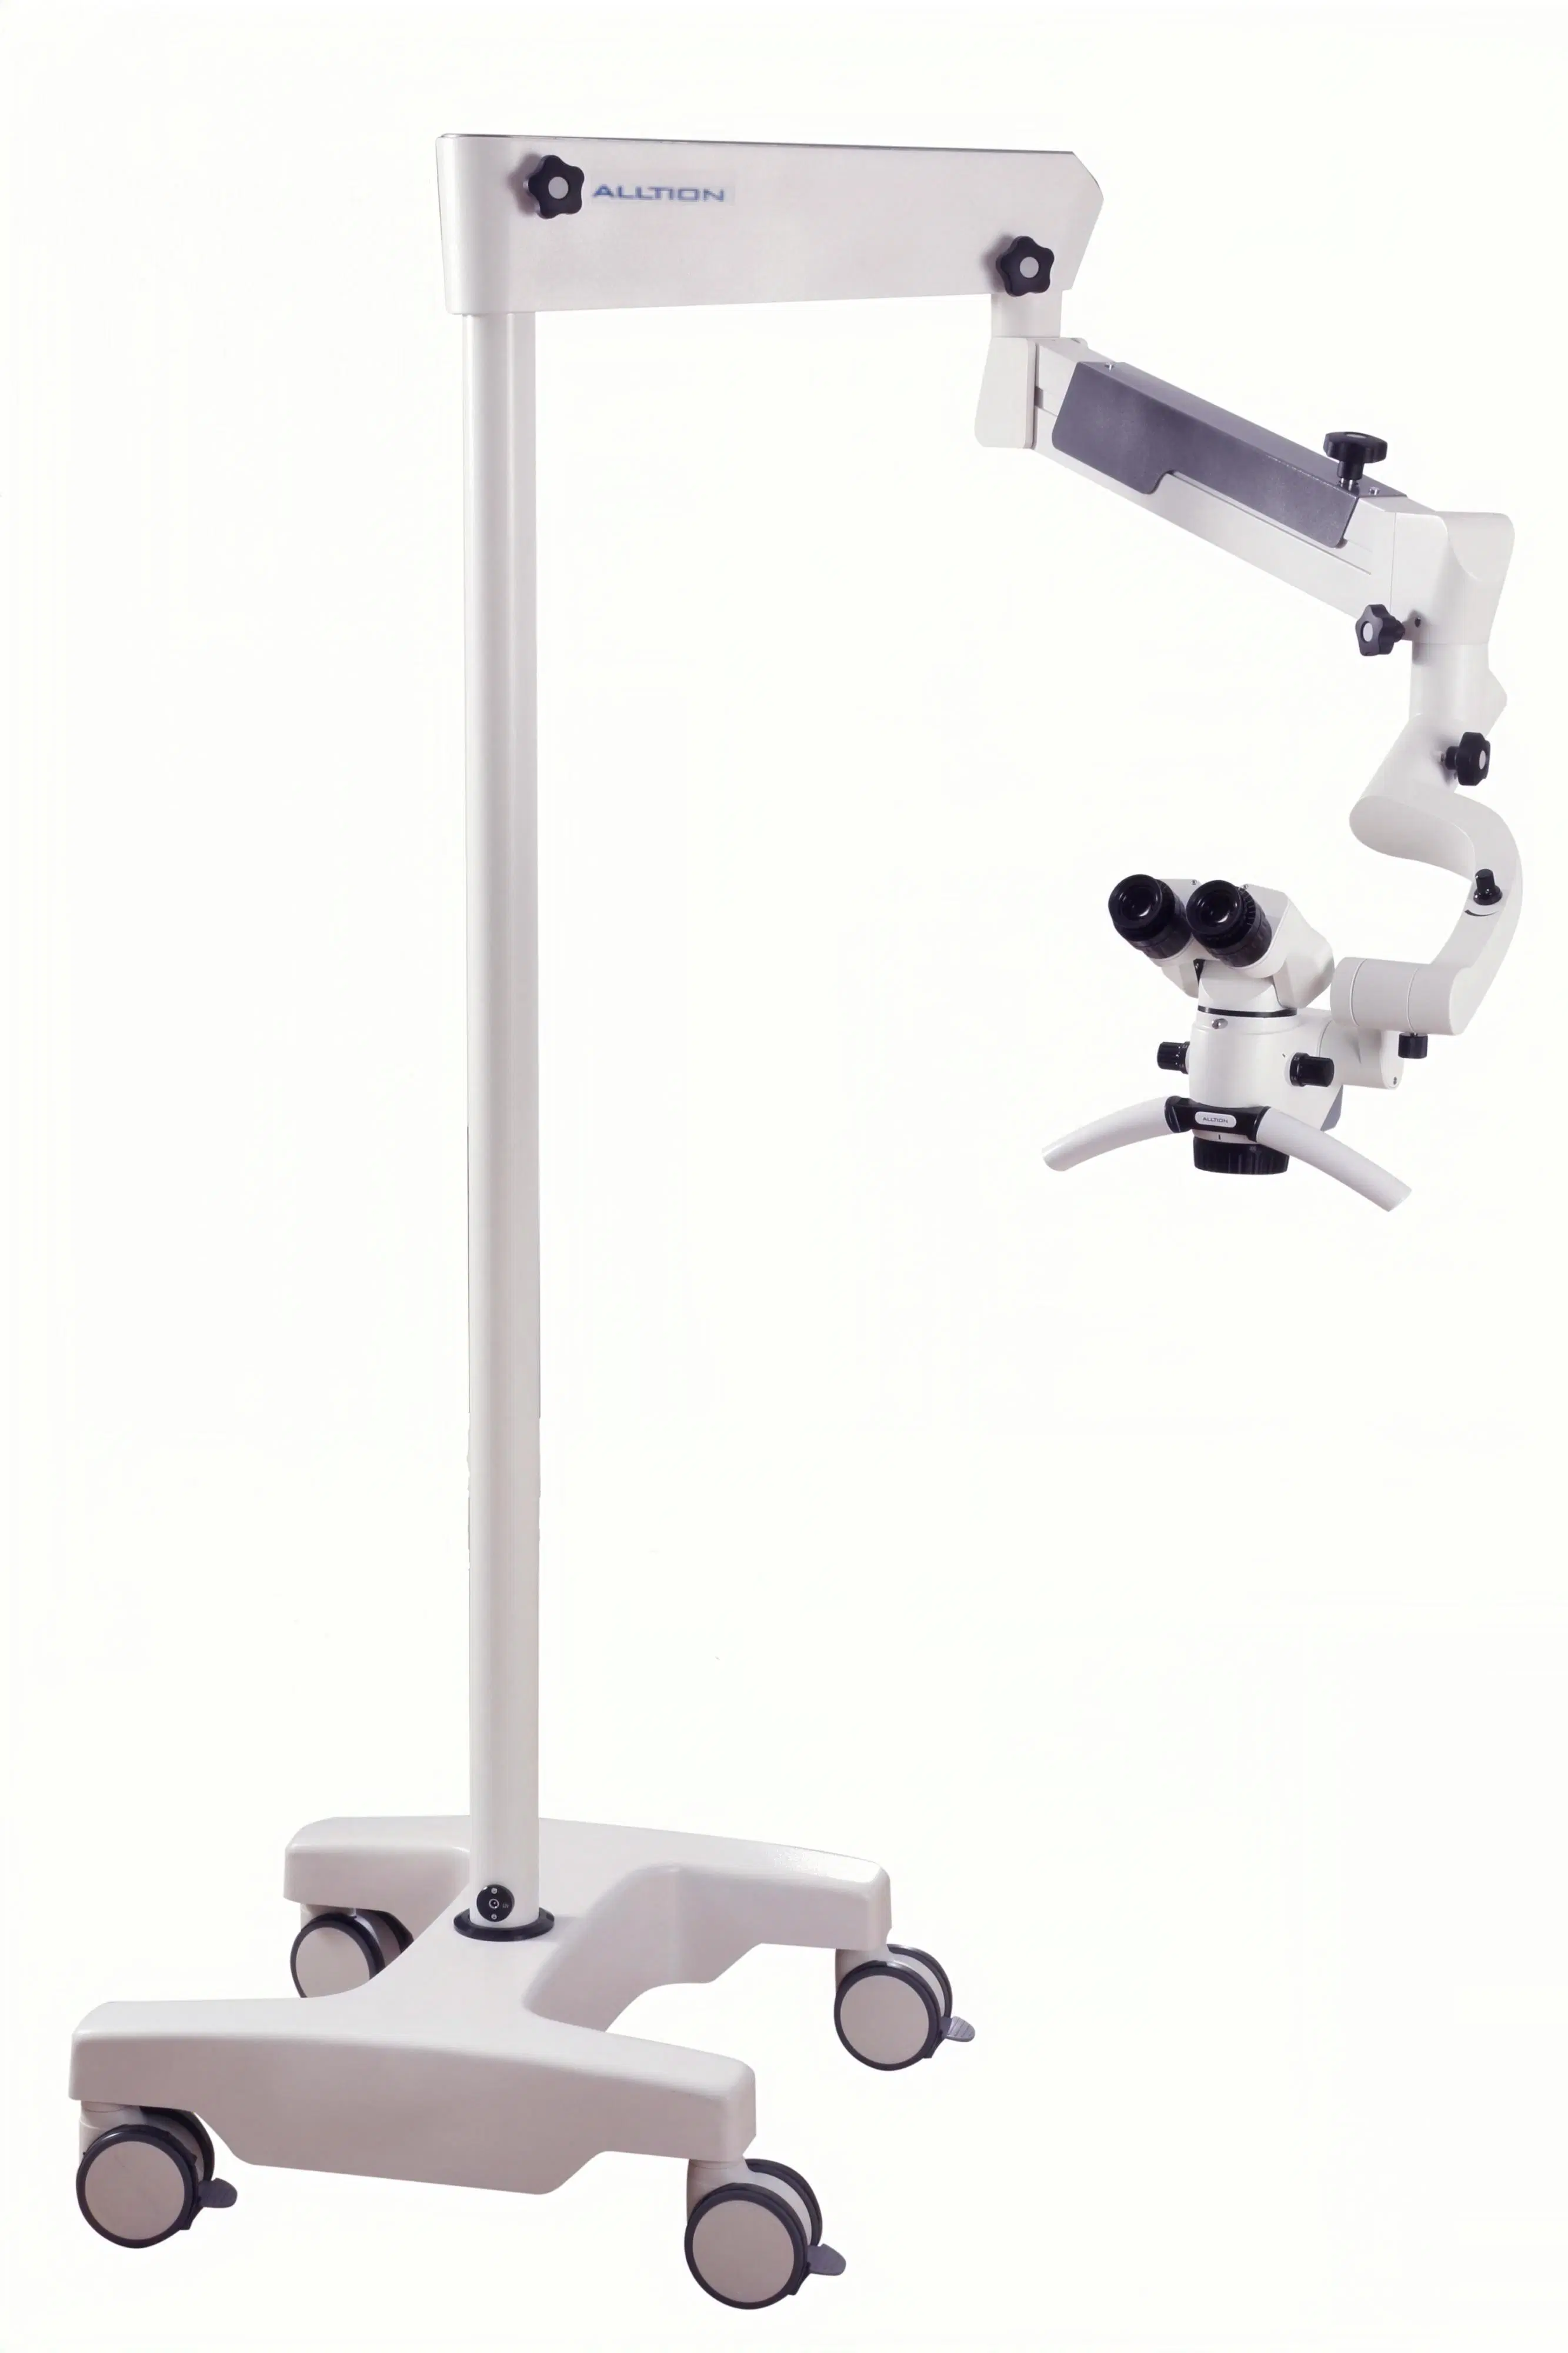 Am-2000 Mikroskop für chirurgische Chirurgie Operation in Ent Dental Orthopädie Handchirurgie Neurochirurgie Andrologie und Urologie P &amp; R Veterinär